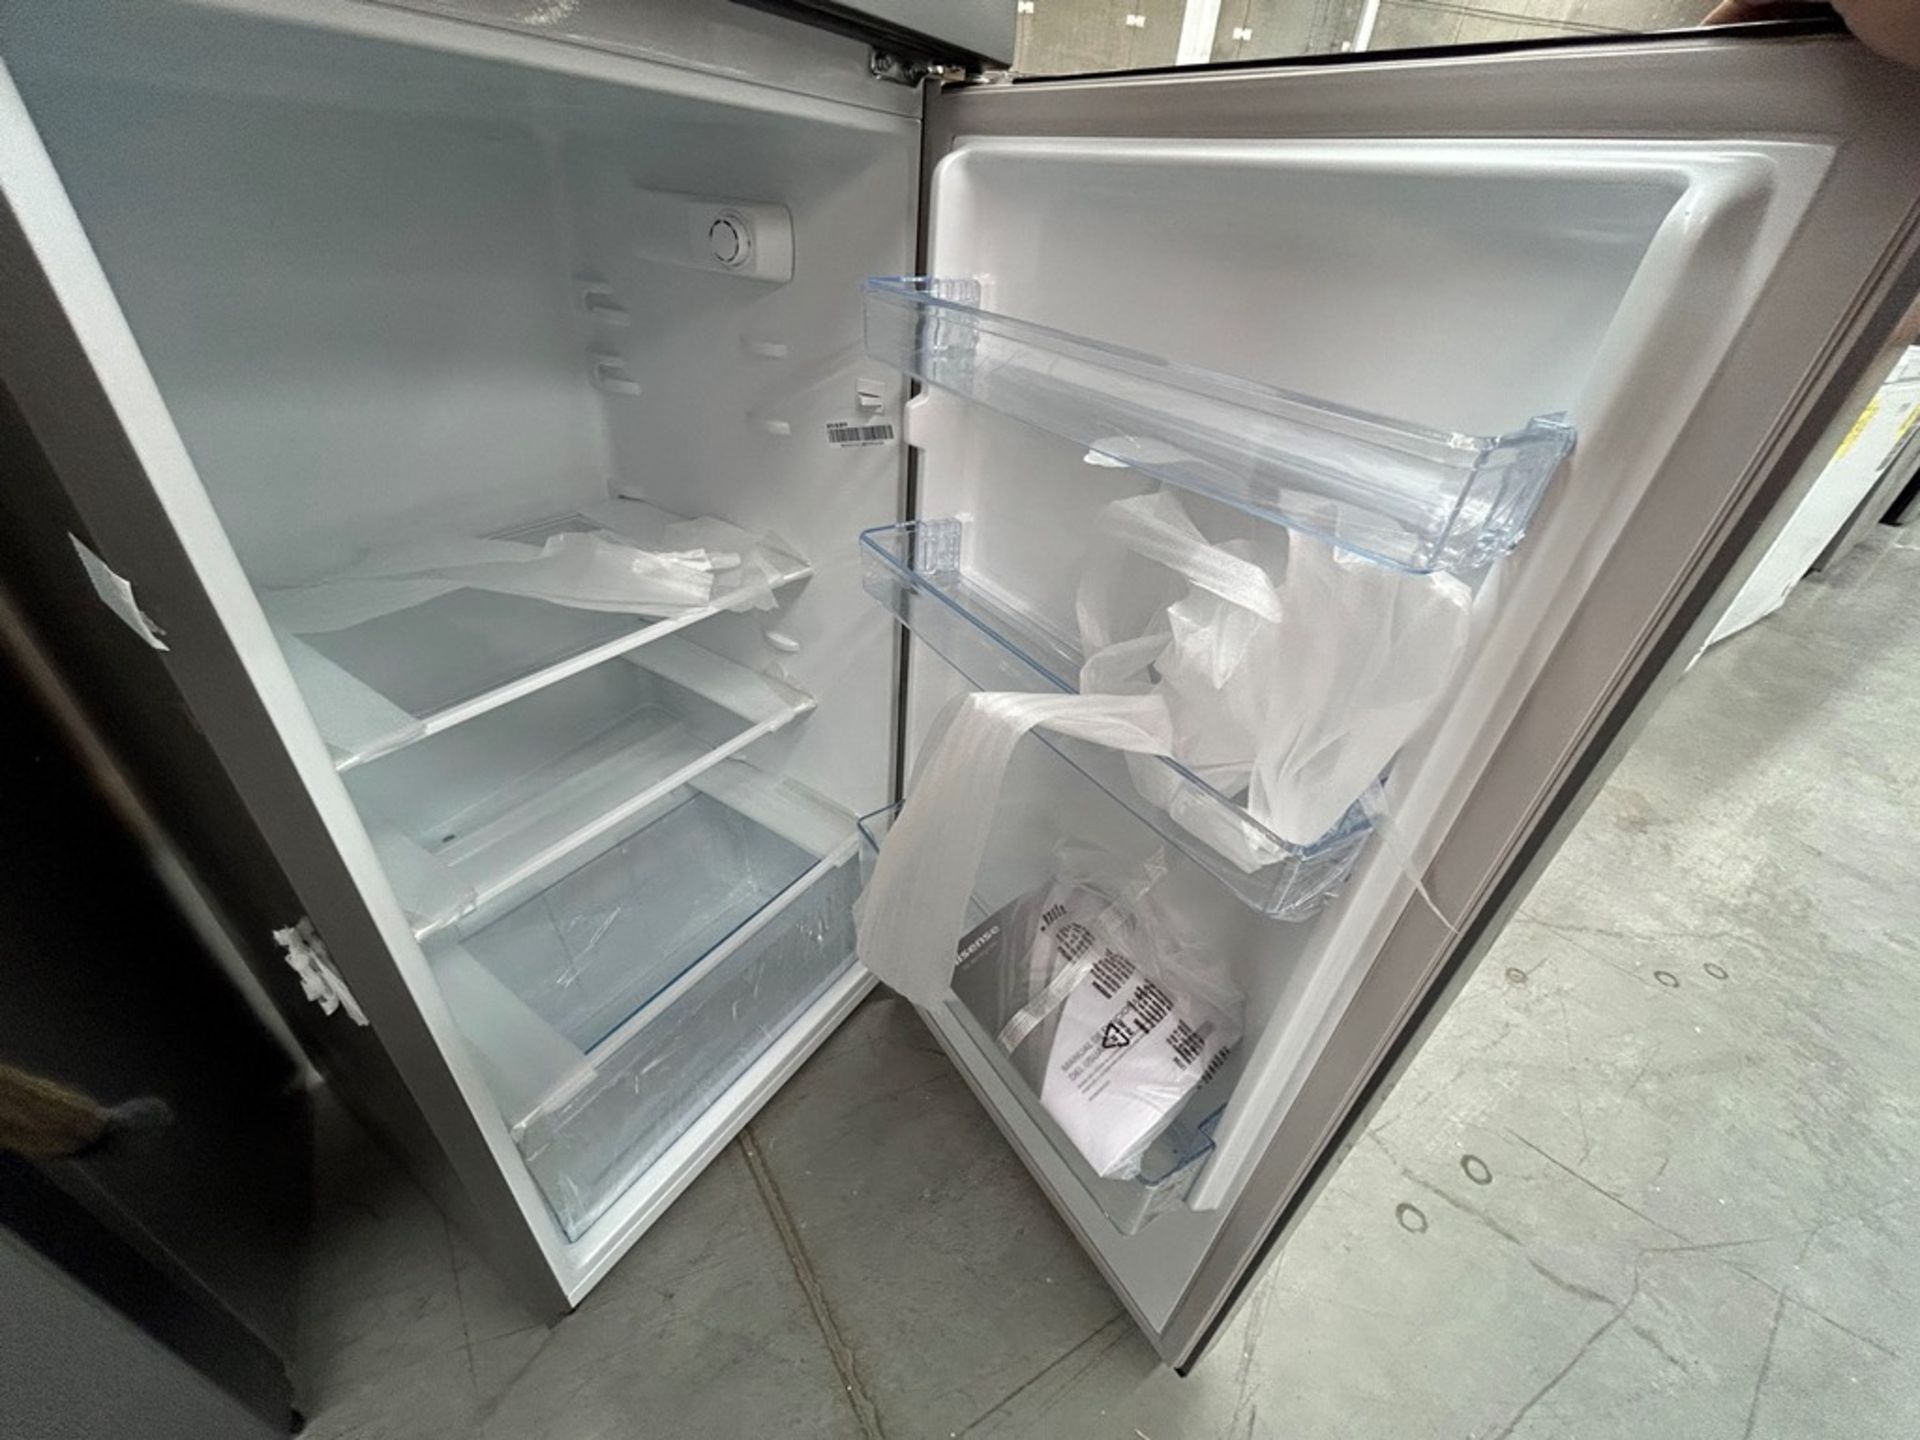 2 refrigeradores contiene: 1 refrigerador Marca HISENSE, Modelo RT80D6AGX, Color NEGRO; 1 refrigera - Image 7 of 8